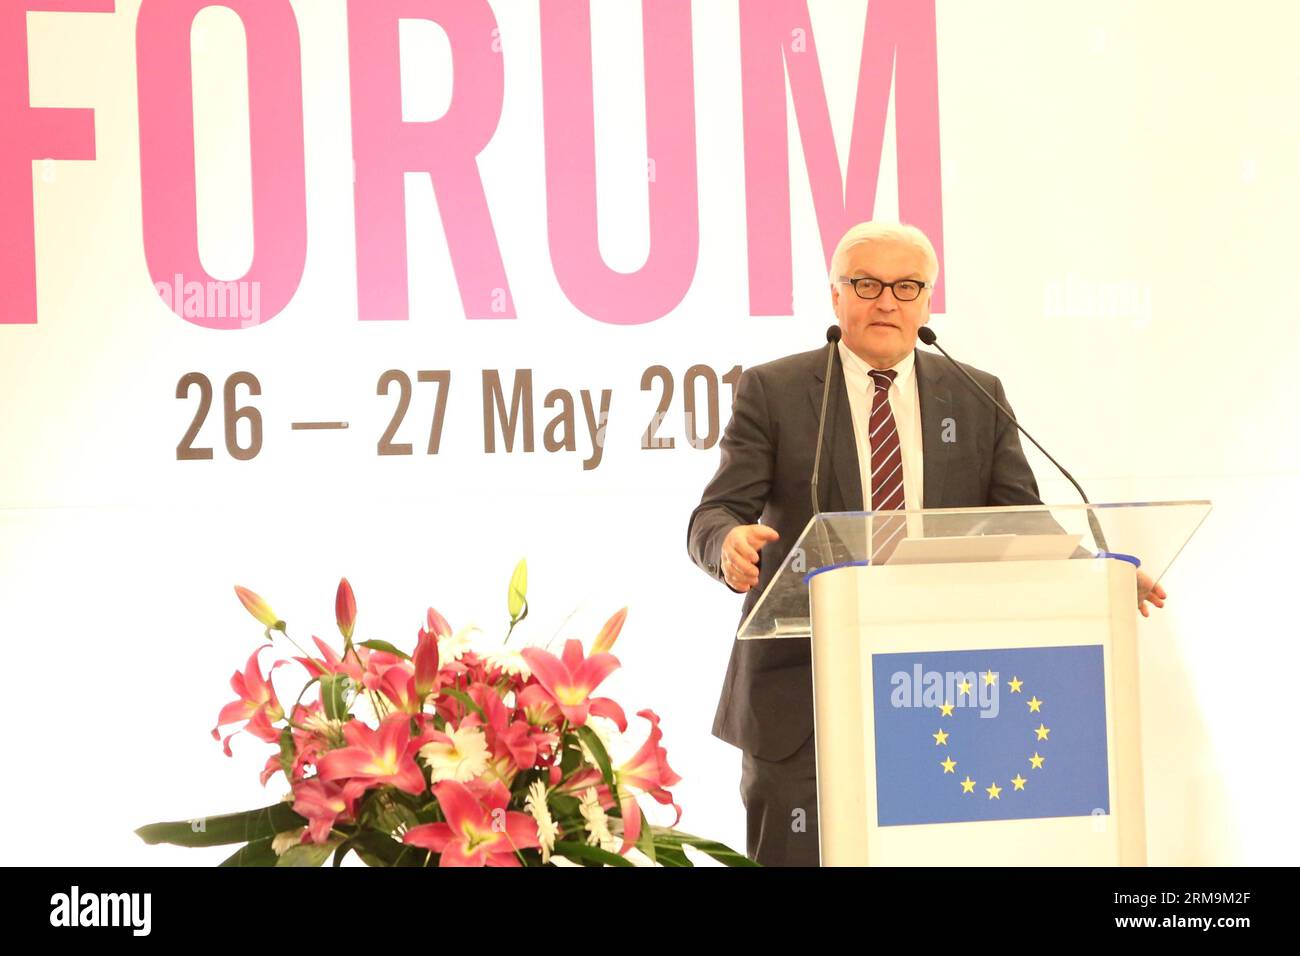 SARAJEVO, 26 maggio 2014 - il ministro degli Esteri tedesco Frank-Walter Steinmeier parla in un forum a Sarajevo, Bosnia ed Erzegovina, il 26 maggio 2014. Il forum, denominato prosperità e posti di lavoro in Bosnia-Erzegovina, è stato organizzato dalla delegazione dell'UE in Bosnia-Erzegovina. (Xinhua/Haris Memija) BOSNIA-ERZEGOVINA-SARAJEVO-MINISTRO DEGLI ESTERI TEDESCO PUBLICATIONxNOTxINxCHN Sarajevo maggio 26 2014 i ministri degli Esteri tedeschi Frank Walter Stein Meier intervengono A Sarajevo in Bosnia-Erzegovina IL 26 2014 maggio il forum intitolato prosperità e posti di lavoro in Bosnia-Erzegovina che cosa organizzato da EU Delega Foto Stock